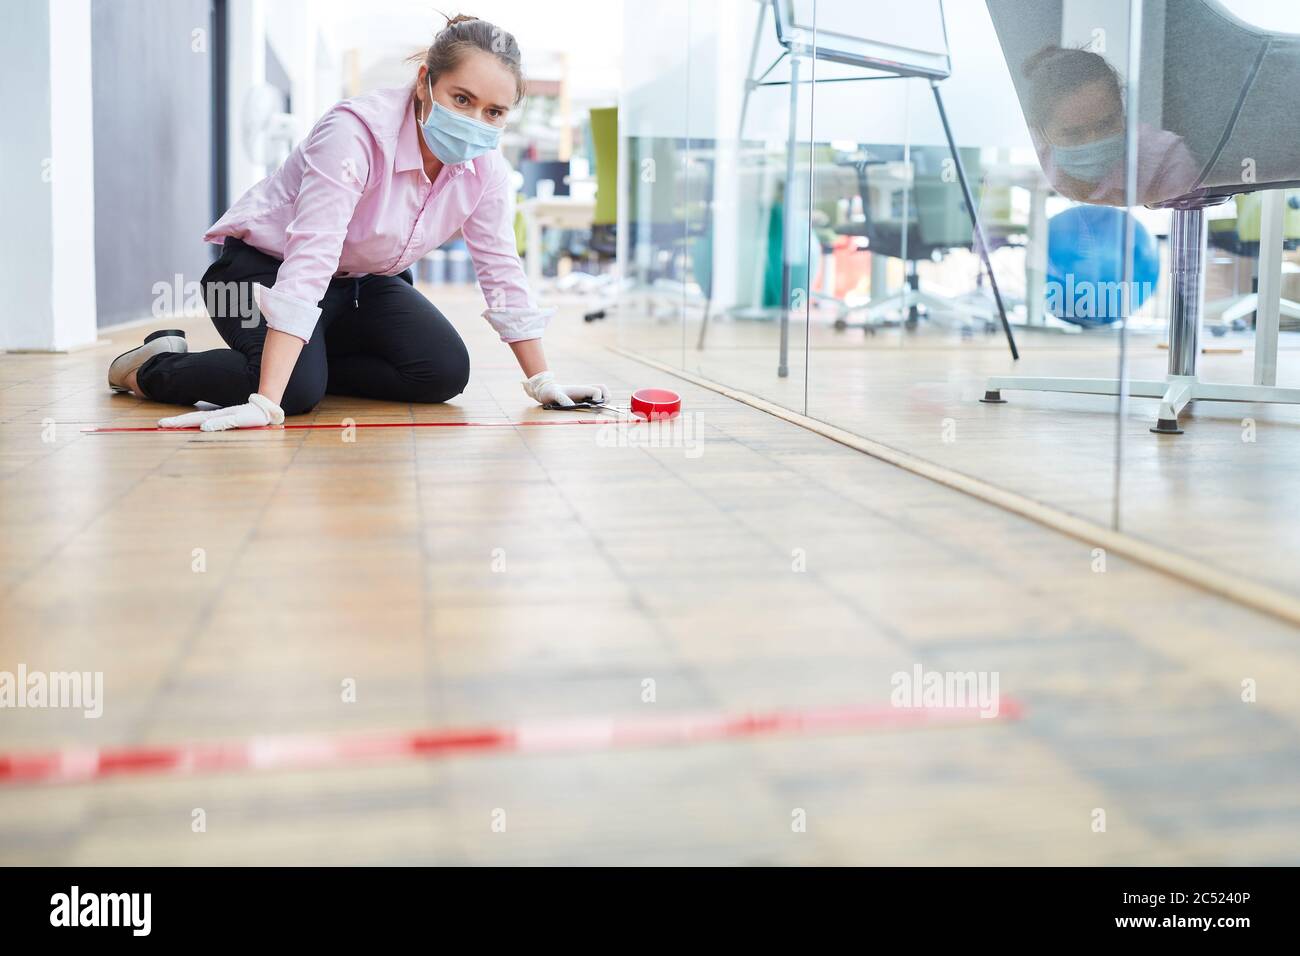 La femme d'affaires marque le sol du bureau avec du ruban adhésif pour garder la distance comme mesure de contrôle des infections Banque D'Images